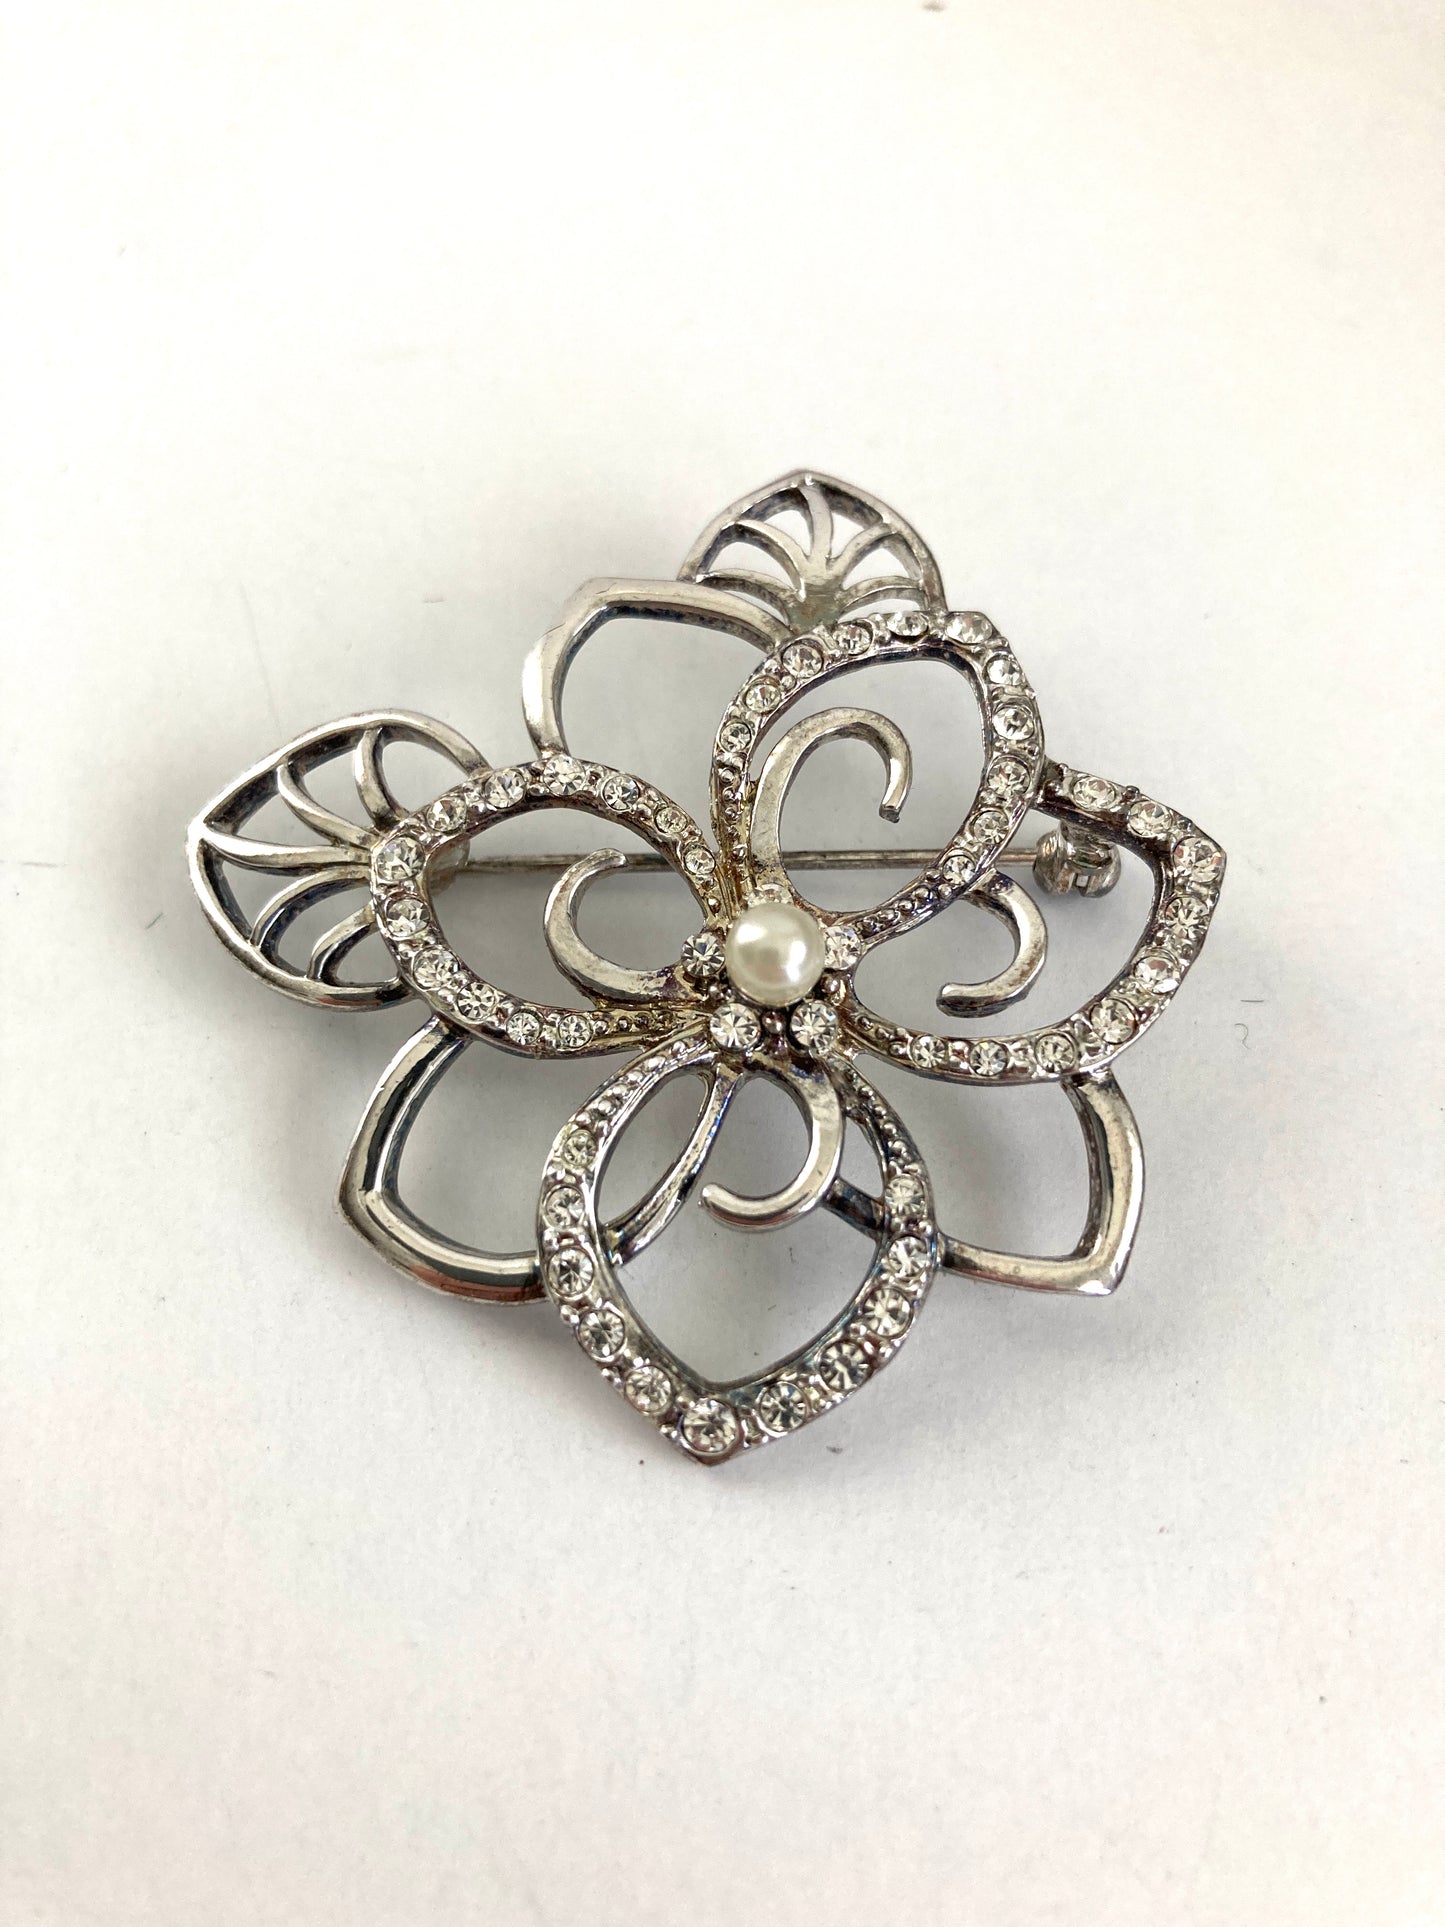 Silver & Crystal Open Flower Brooch Monet